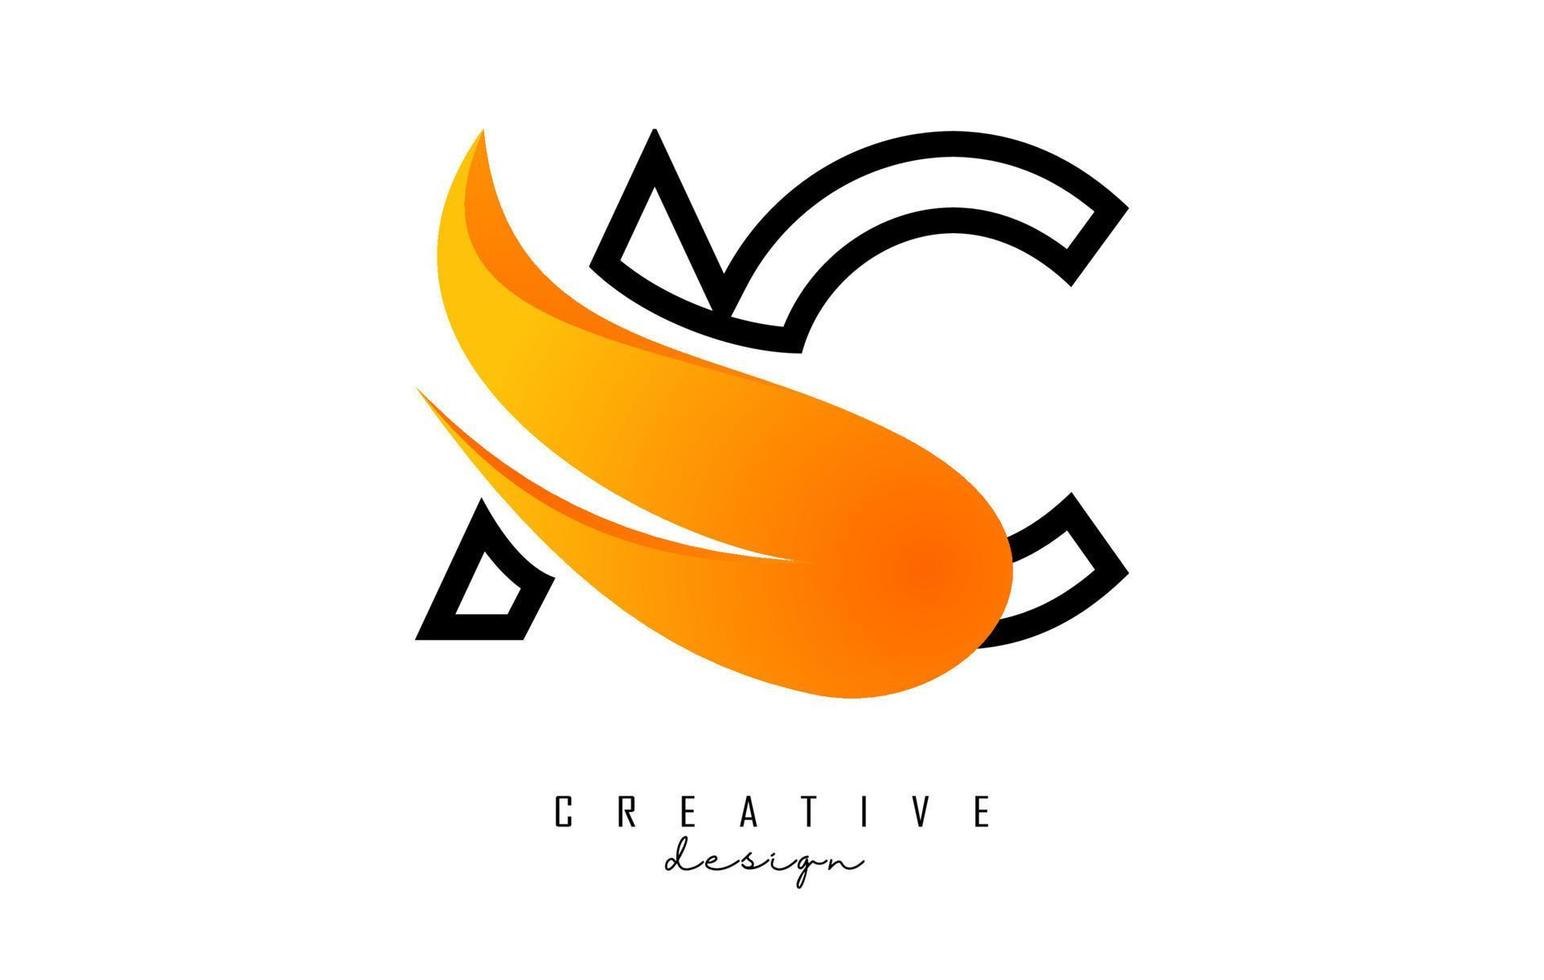 schets vector illustratie van abstract brieven ac een c met brand vlammen en oranje swoosh ontwerp.